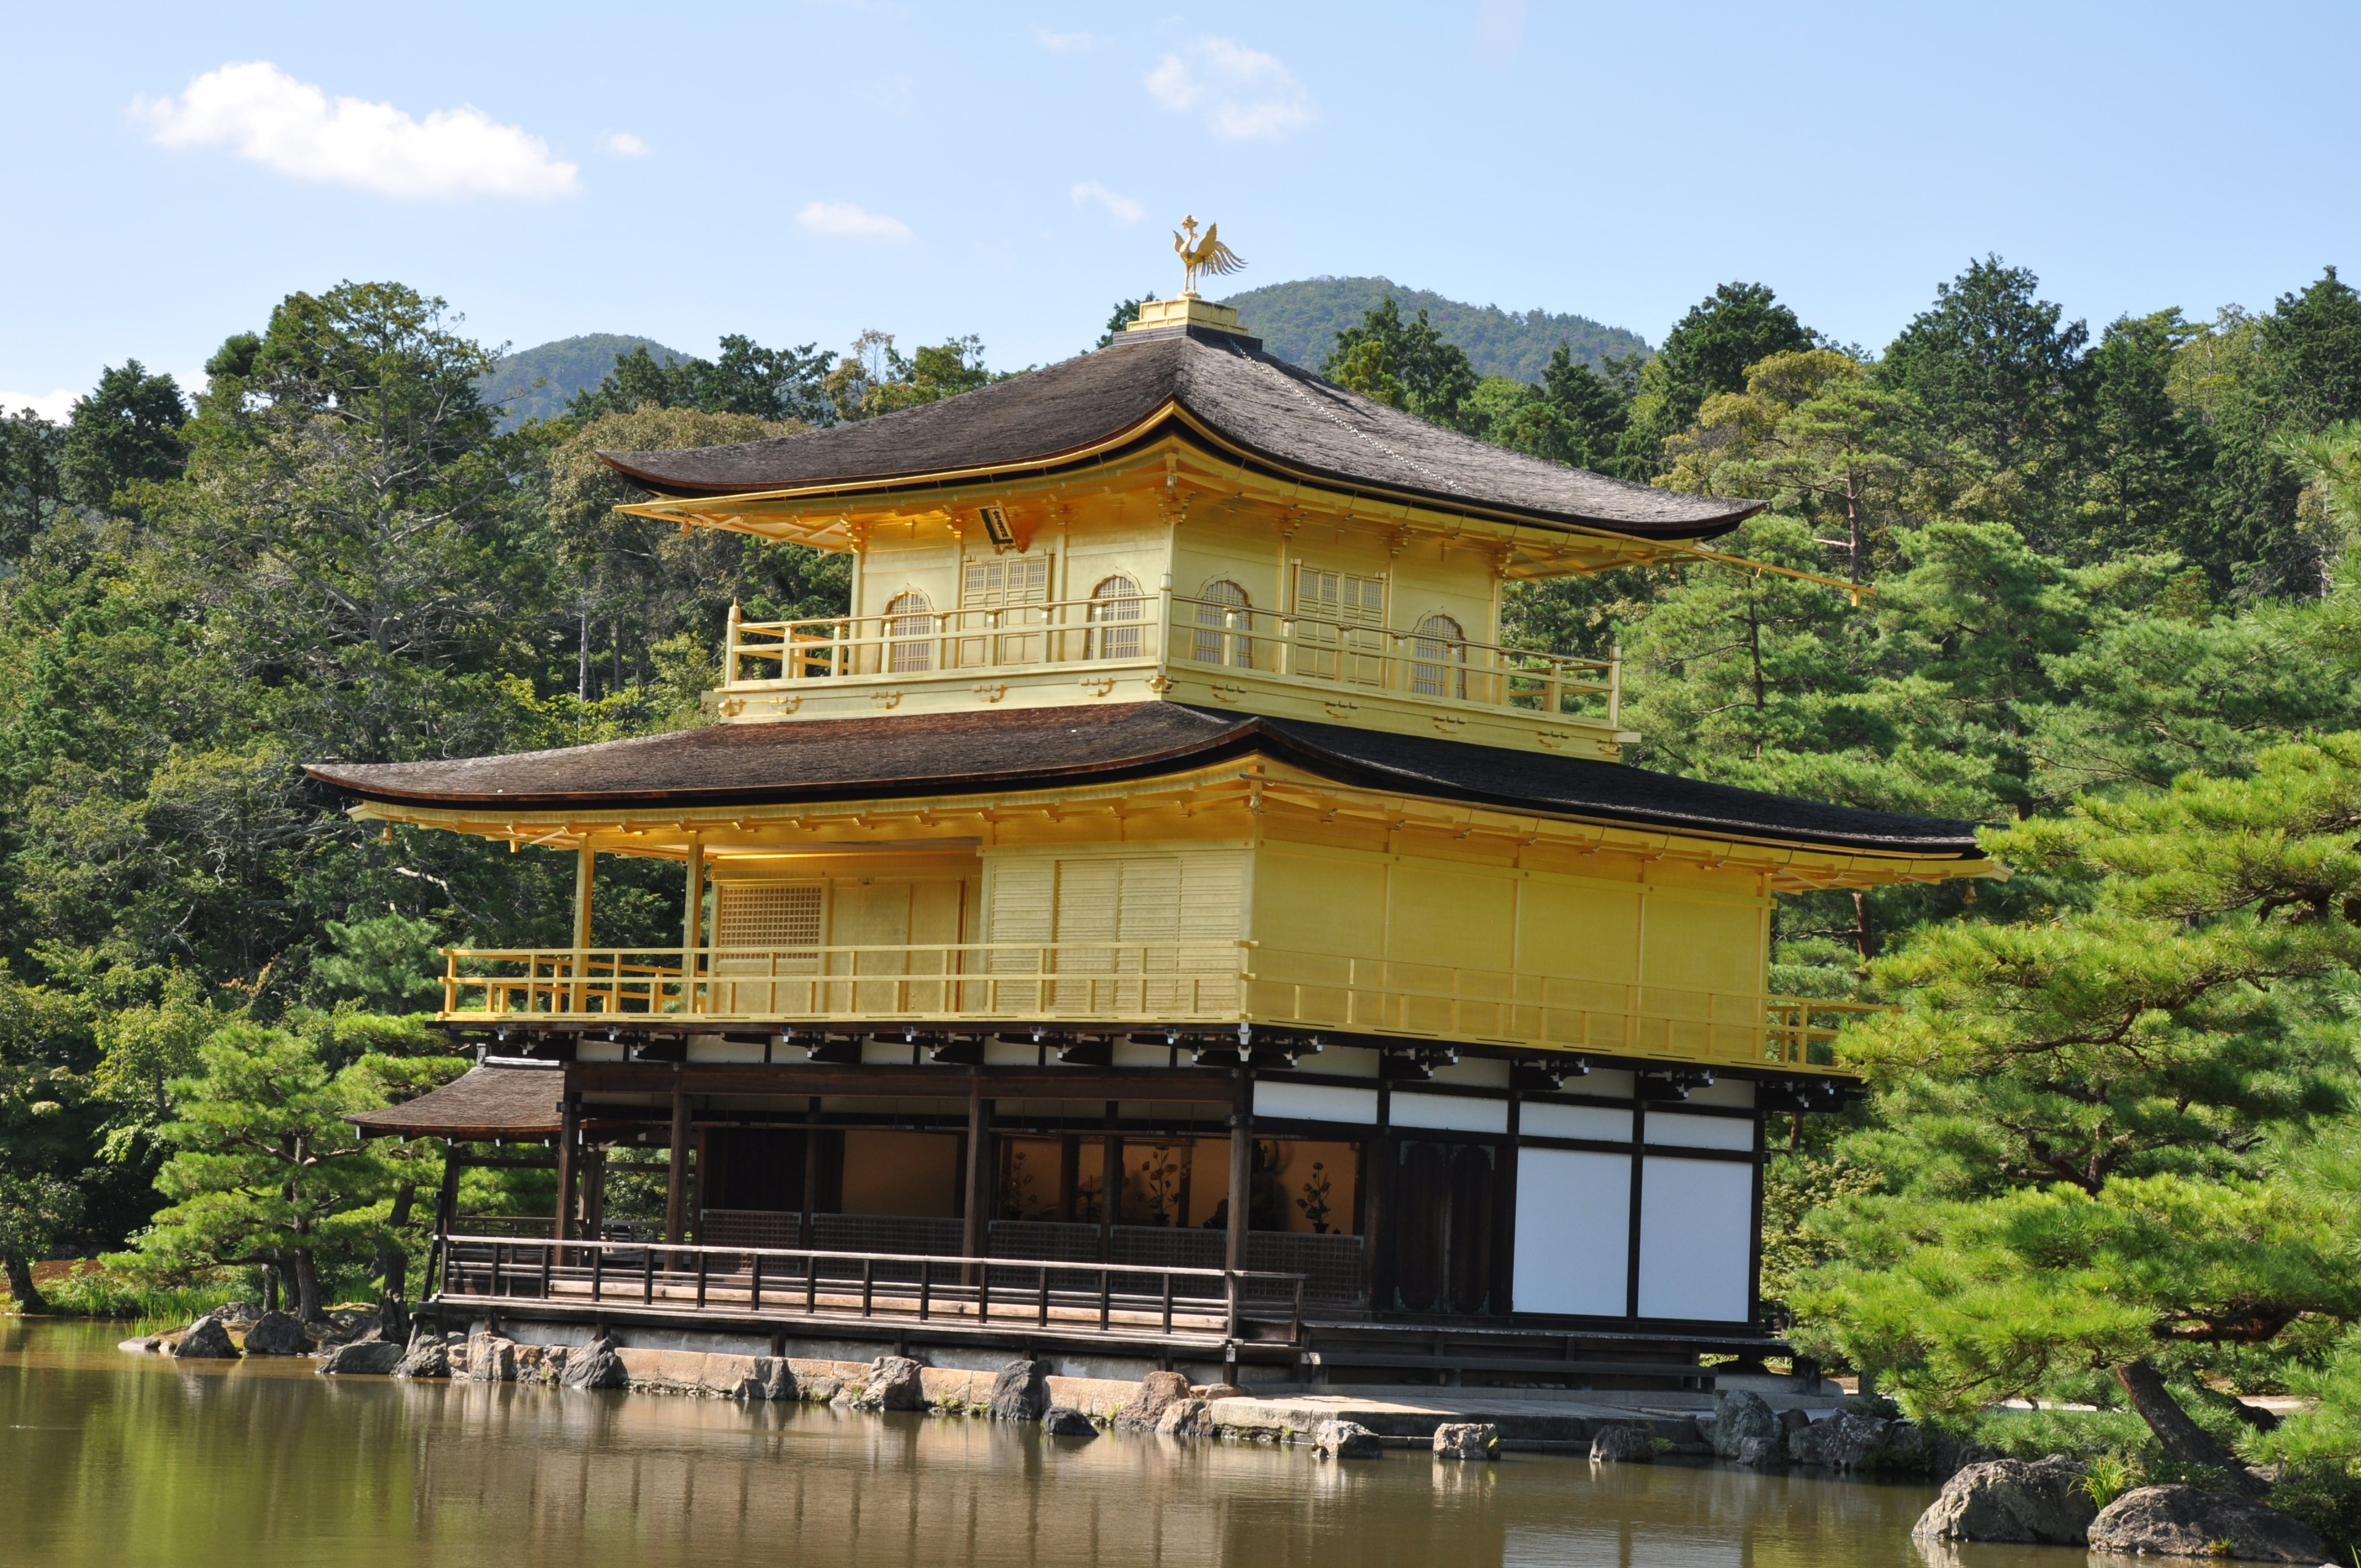 จากบ้านพักของโชกุนในศตวรรษที่ 14 ปัจจุบันวัดพลับพลาทองได้กลายเป็นสถานที่ท่องเที่ยวห้ามพลาดหากมาเยือนเกียวโต